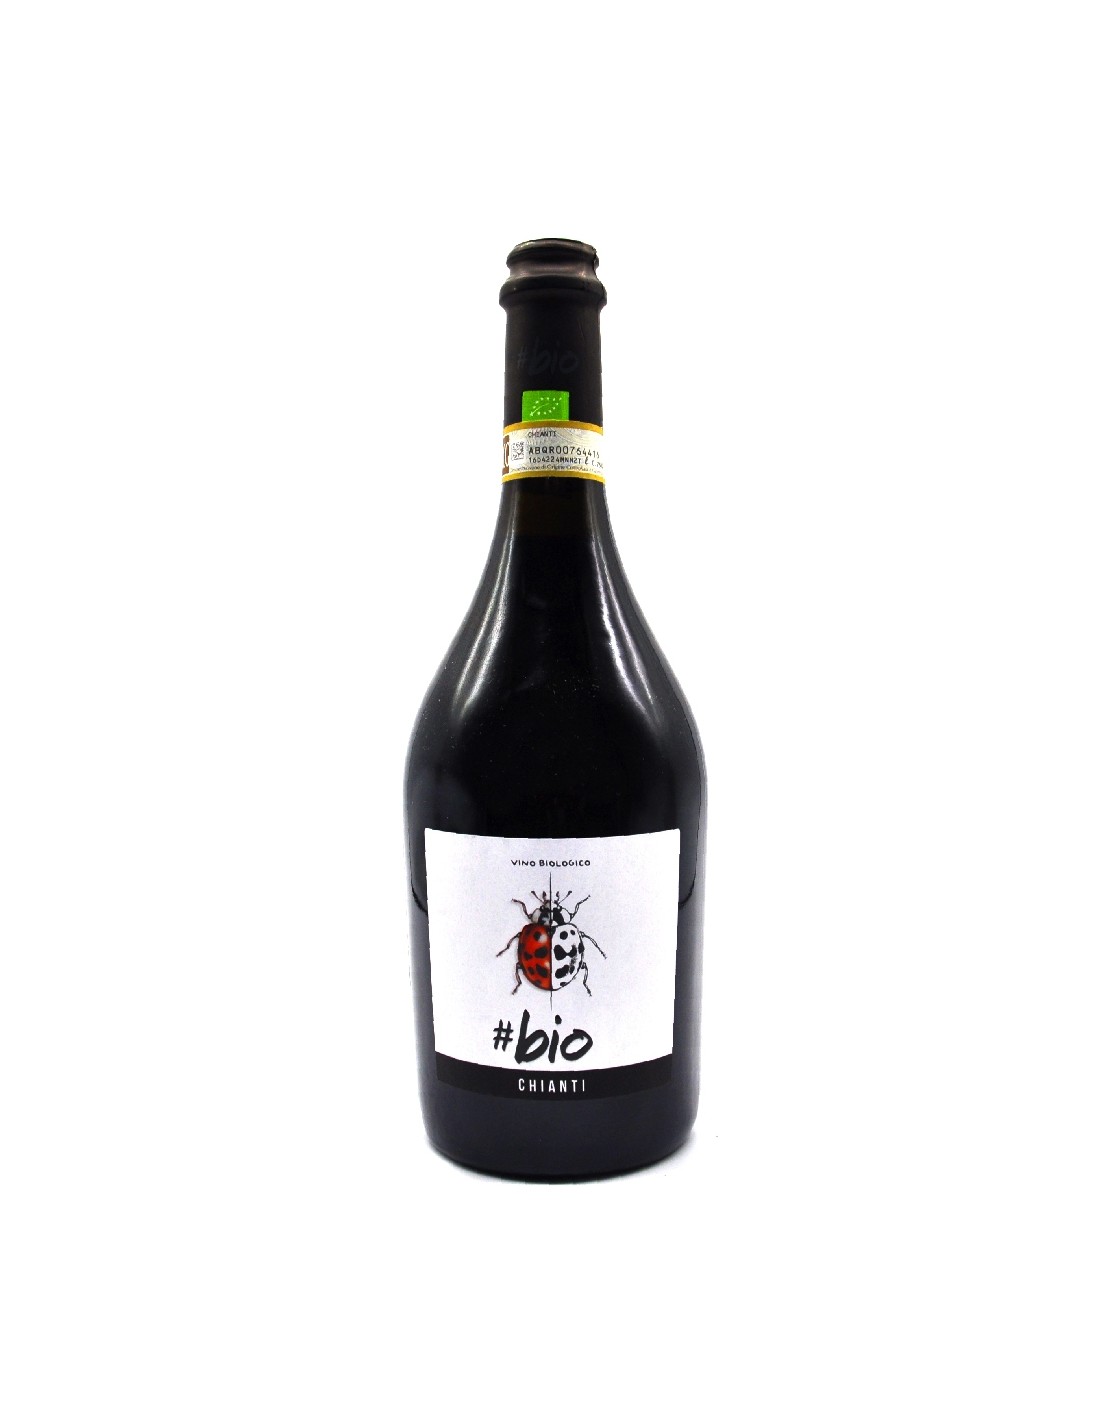 Vin rosu organic Bio Chianti, 13% alc., 0.75L, Italia alcooldiscount.ro